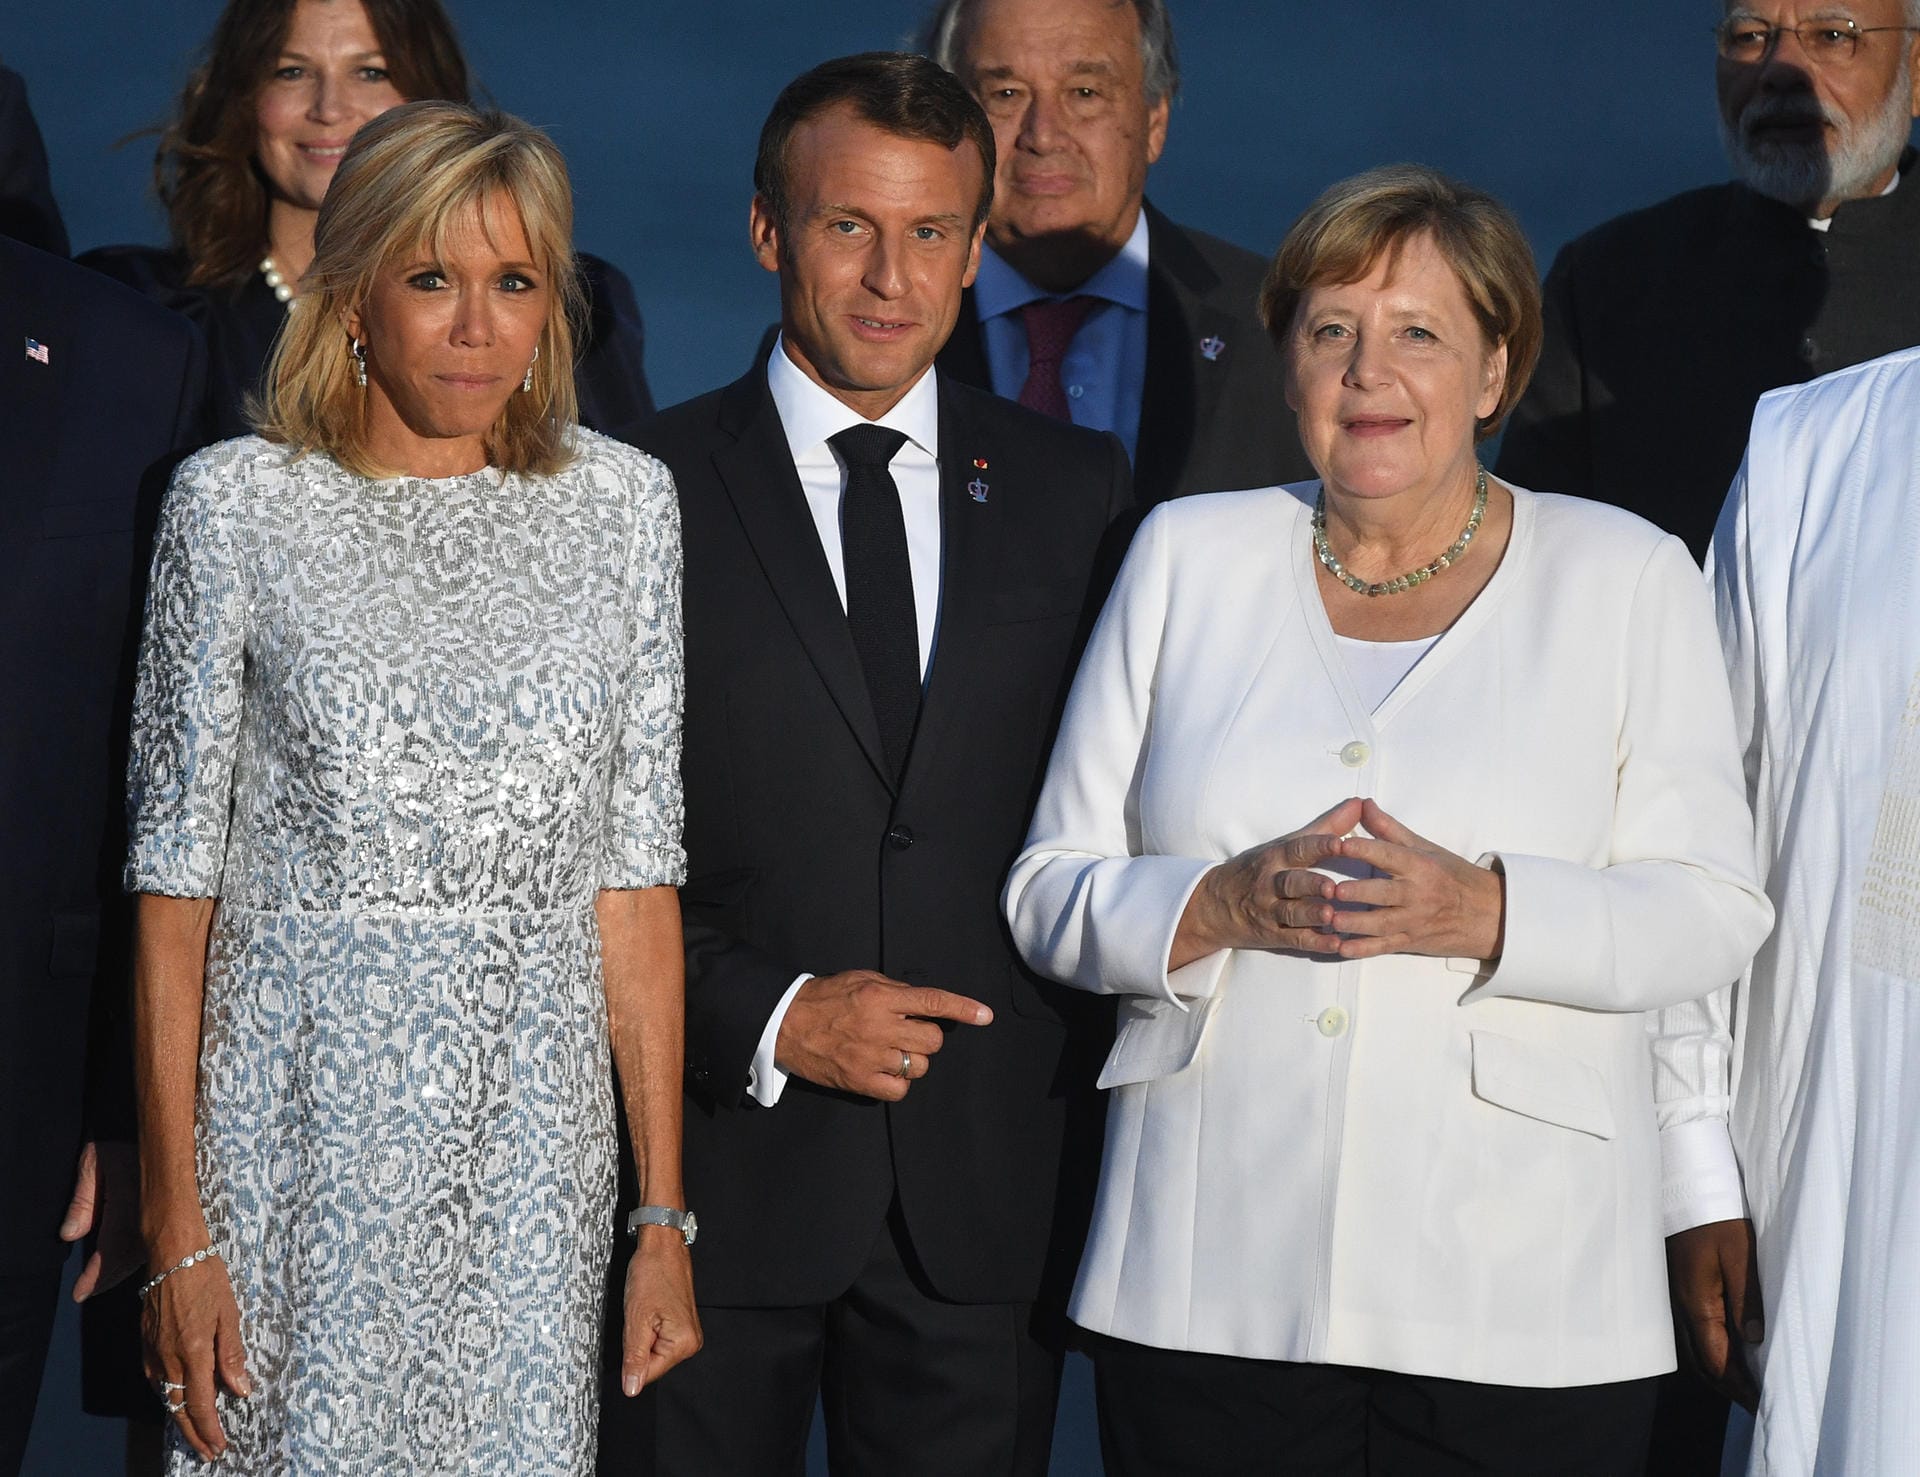 August 2019: Das Ehepaar Macron mit Angela Merkel beim G7-Gipfel in Biarritz, Frankreich